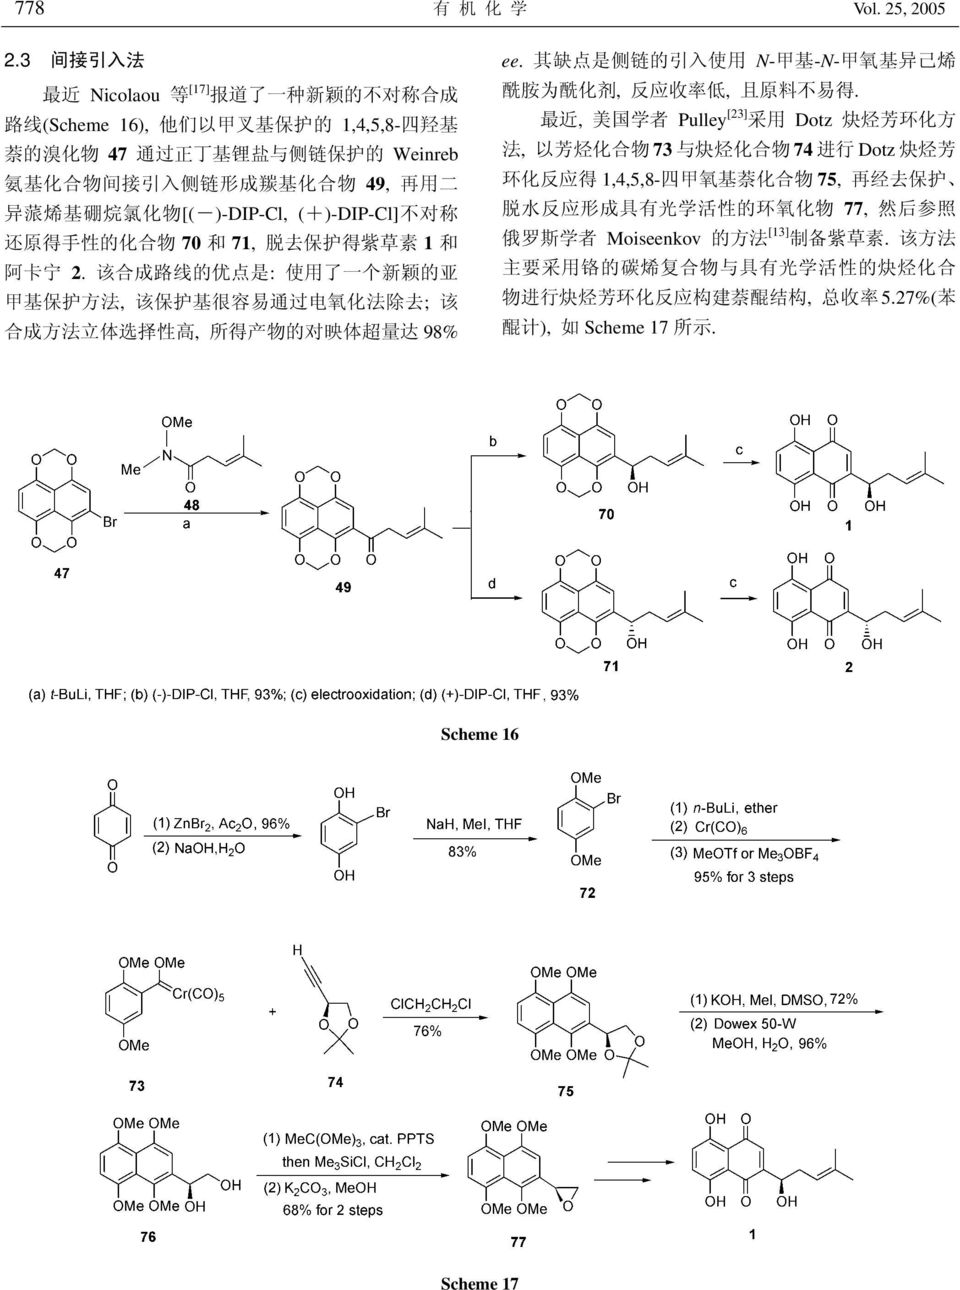 二 异 蒎 烯 基 硼 烷 氯 化 物 [(-)-DIP-Cl, (+)-DIP-Cl] 不 对 称 还 原 得 手 性 的 化 合 物 70 和 71, 脱 去 保 护 得 紫 草 素 1 和 阿 卡 宁 2.